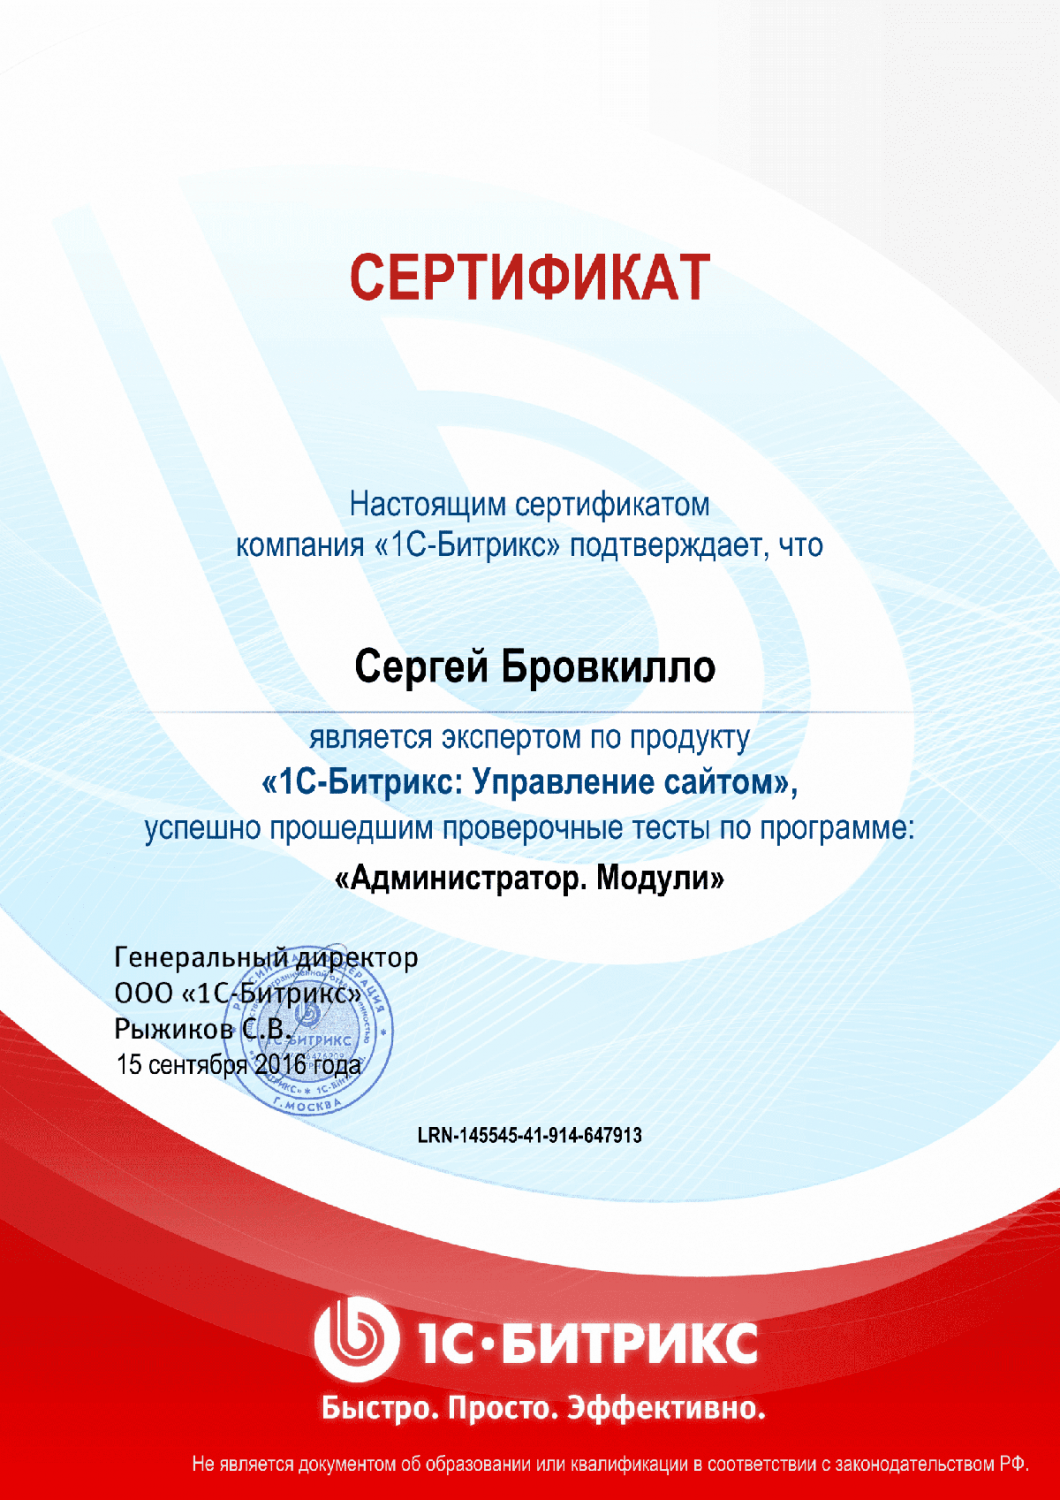 Сертификат эксперта по программе "Администратор. Модули" в Симферополя